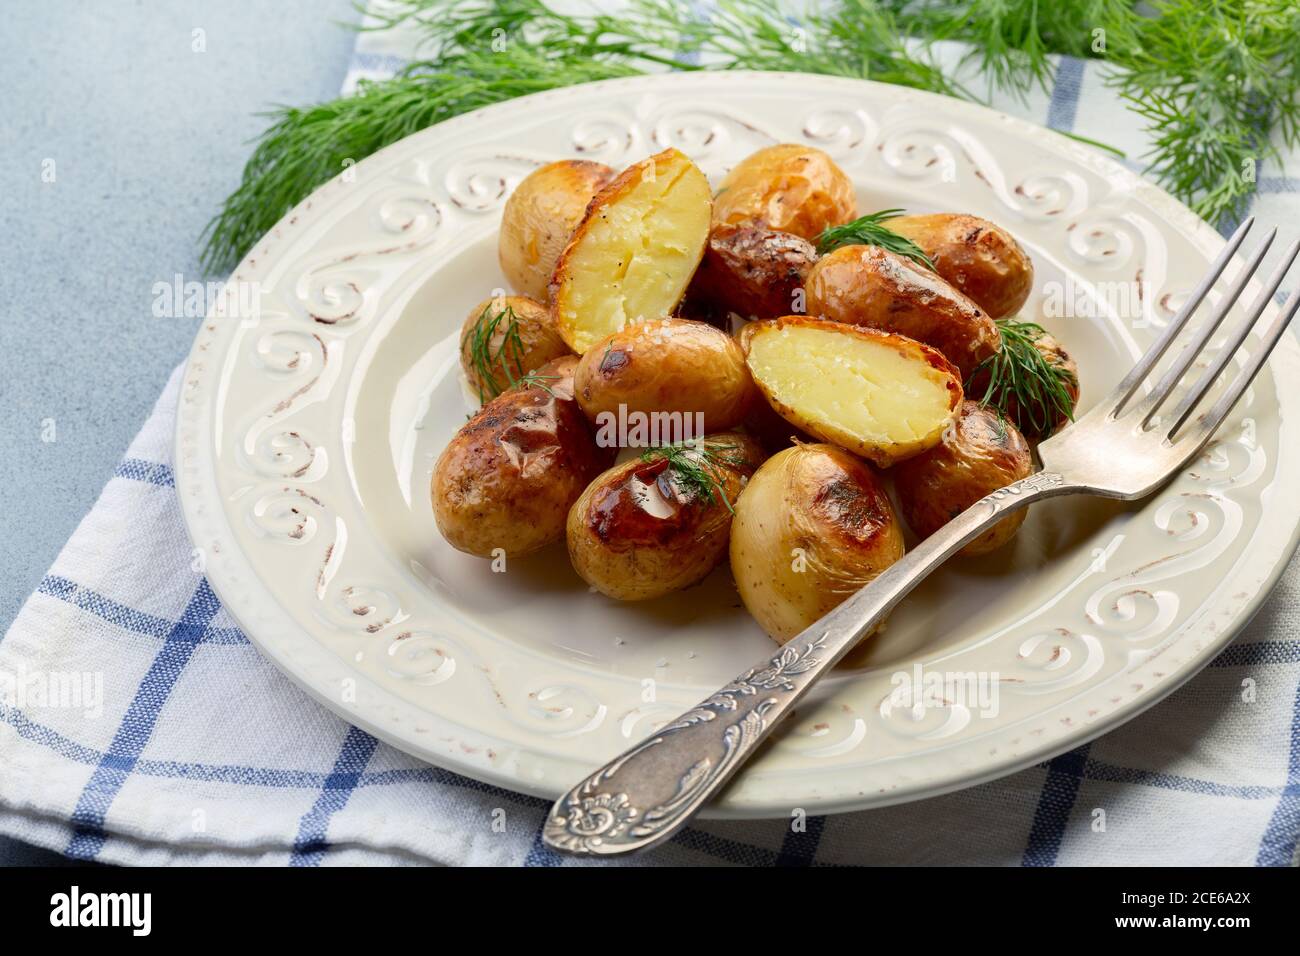 Jeunes pommes de terre cuites au four avec sel et aneth. Banque D'Images